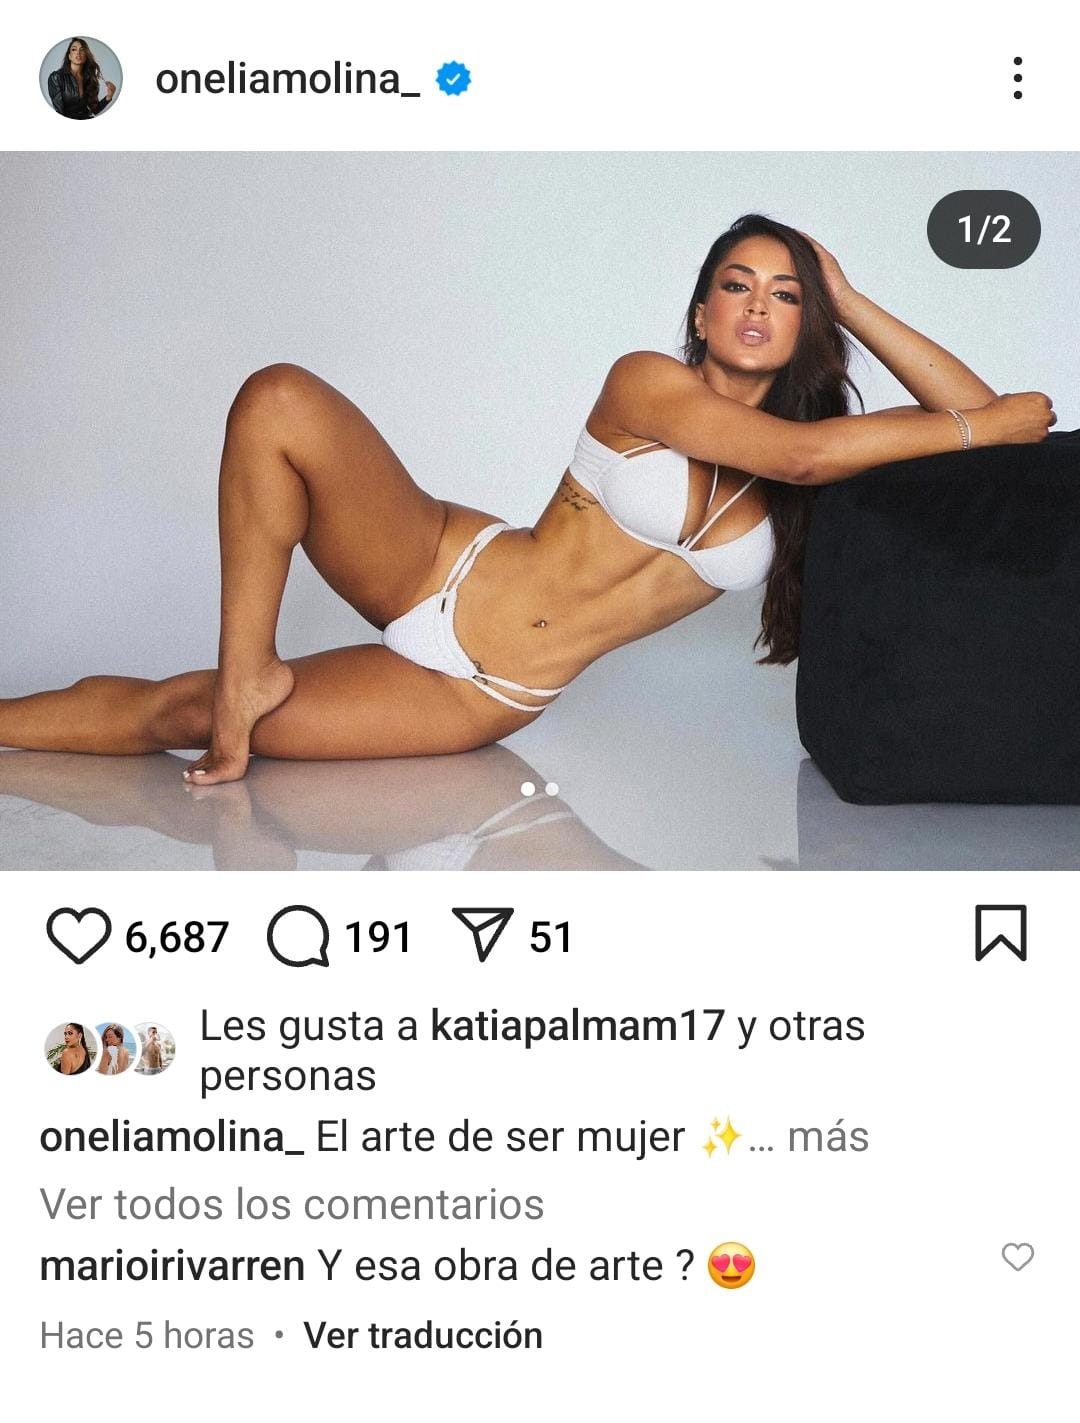 Mario Irivarren dedicó piropo a Onelia Molina. Fuente: instagram